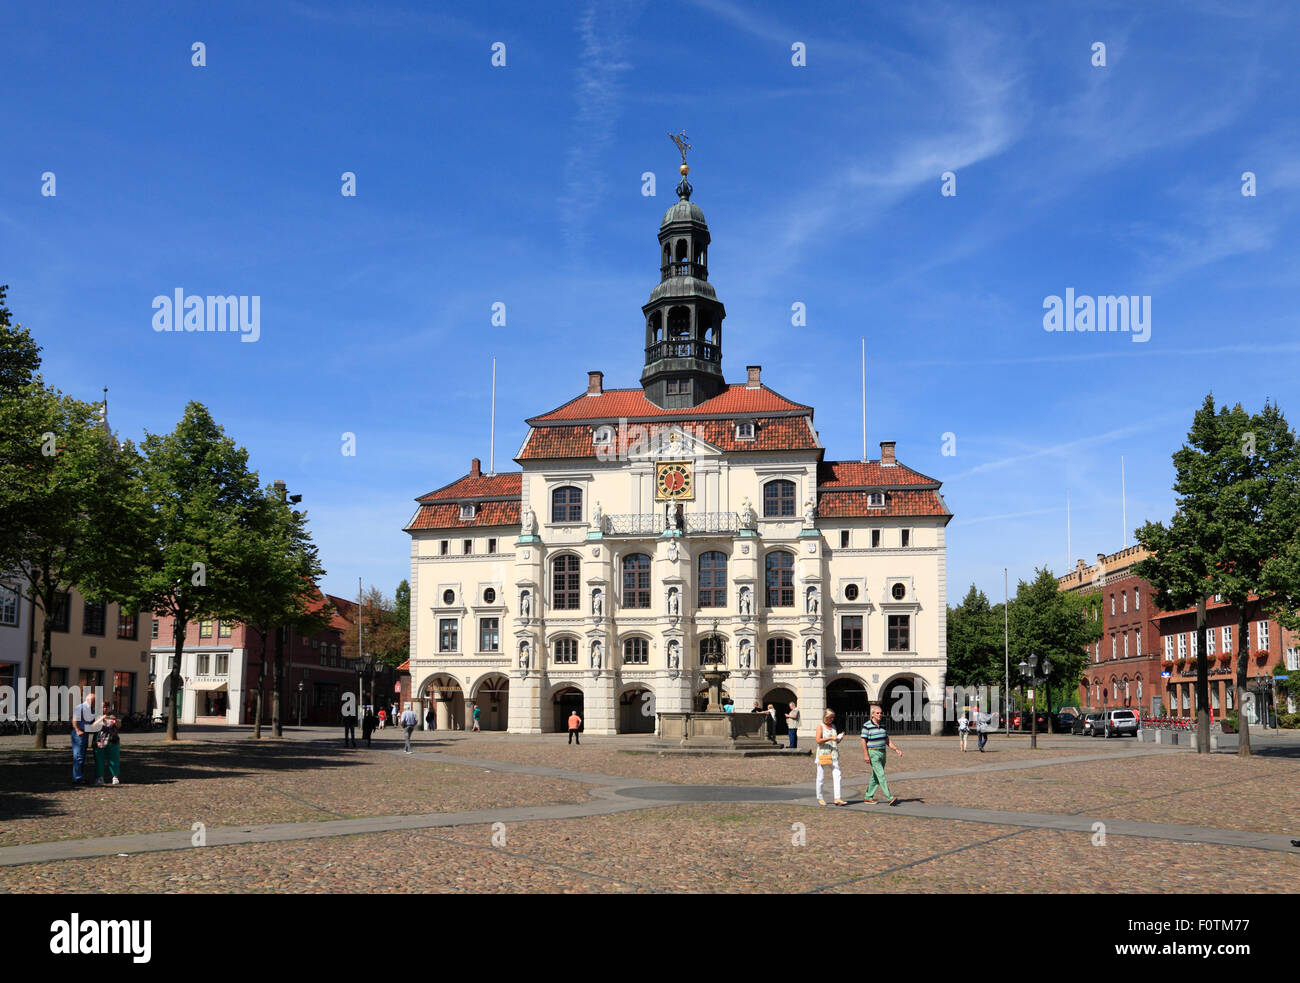 Touristen vor dem Rathaus am Marktplatz, Lüneburg, Lüneburg, Niedersachsen, Deutschland, Europa Stockfoto